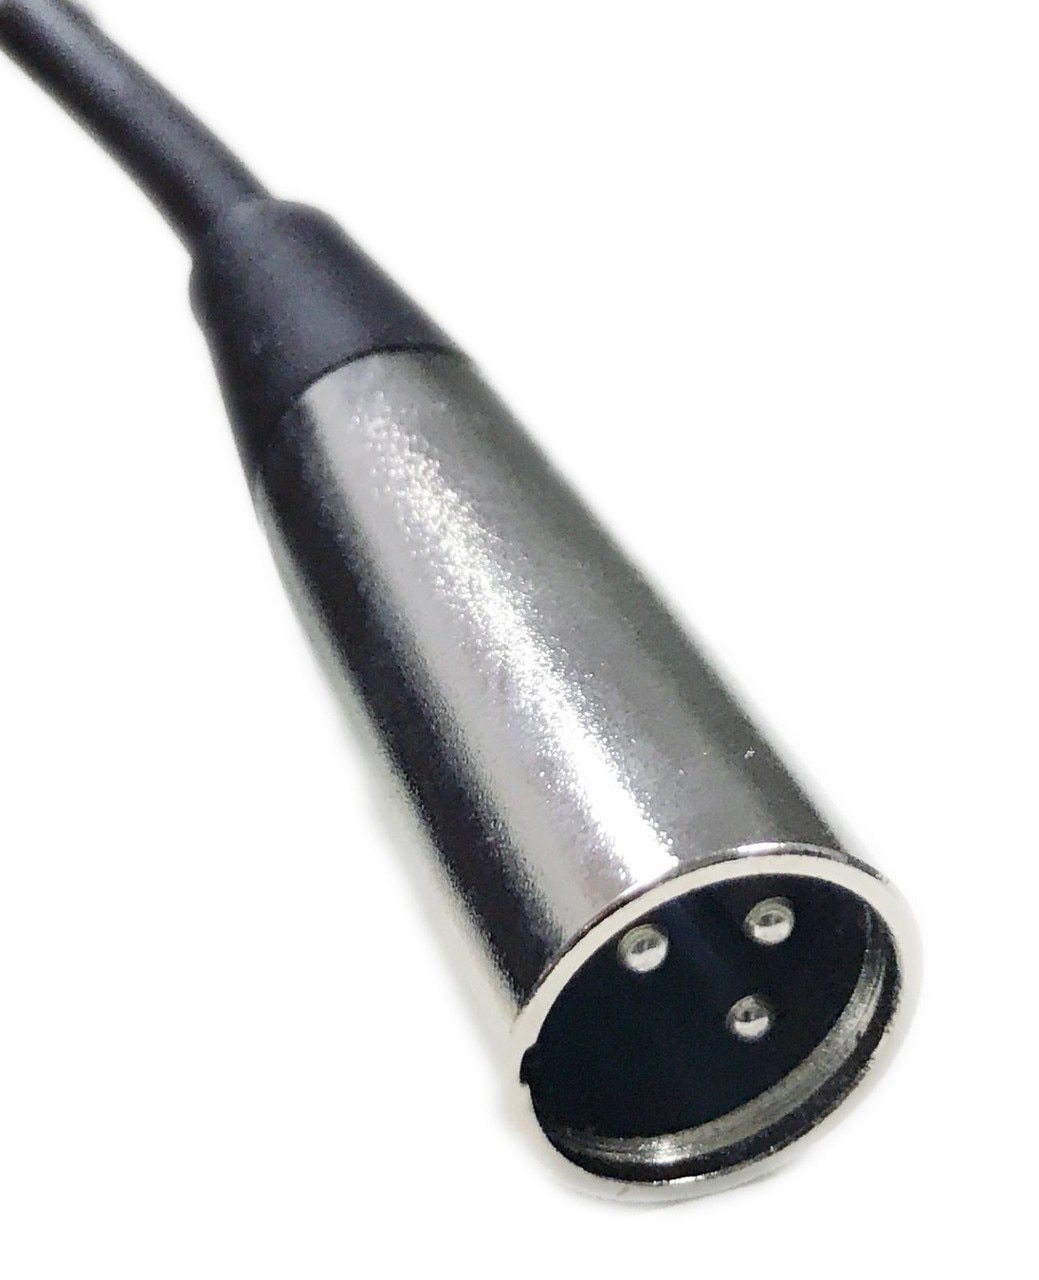 xlr connector to speaker wire